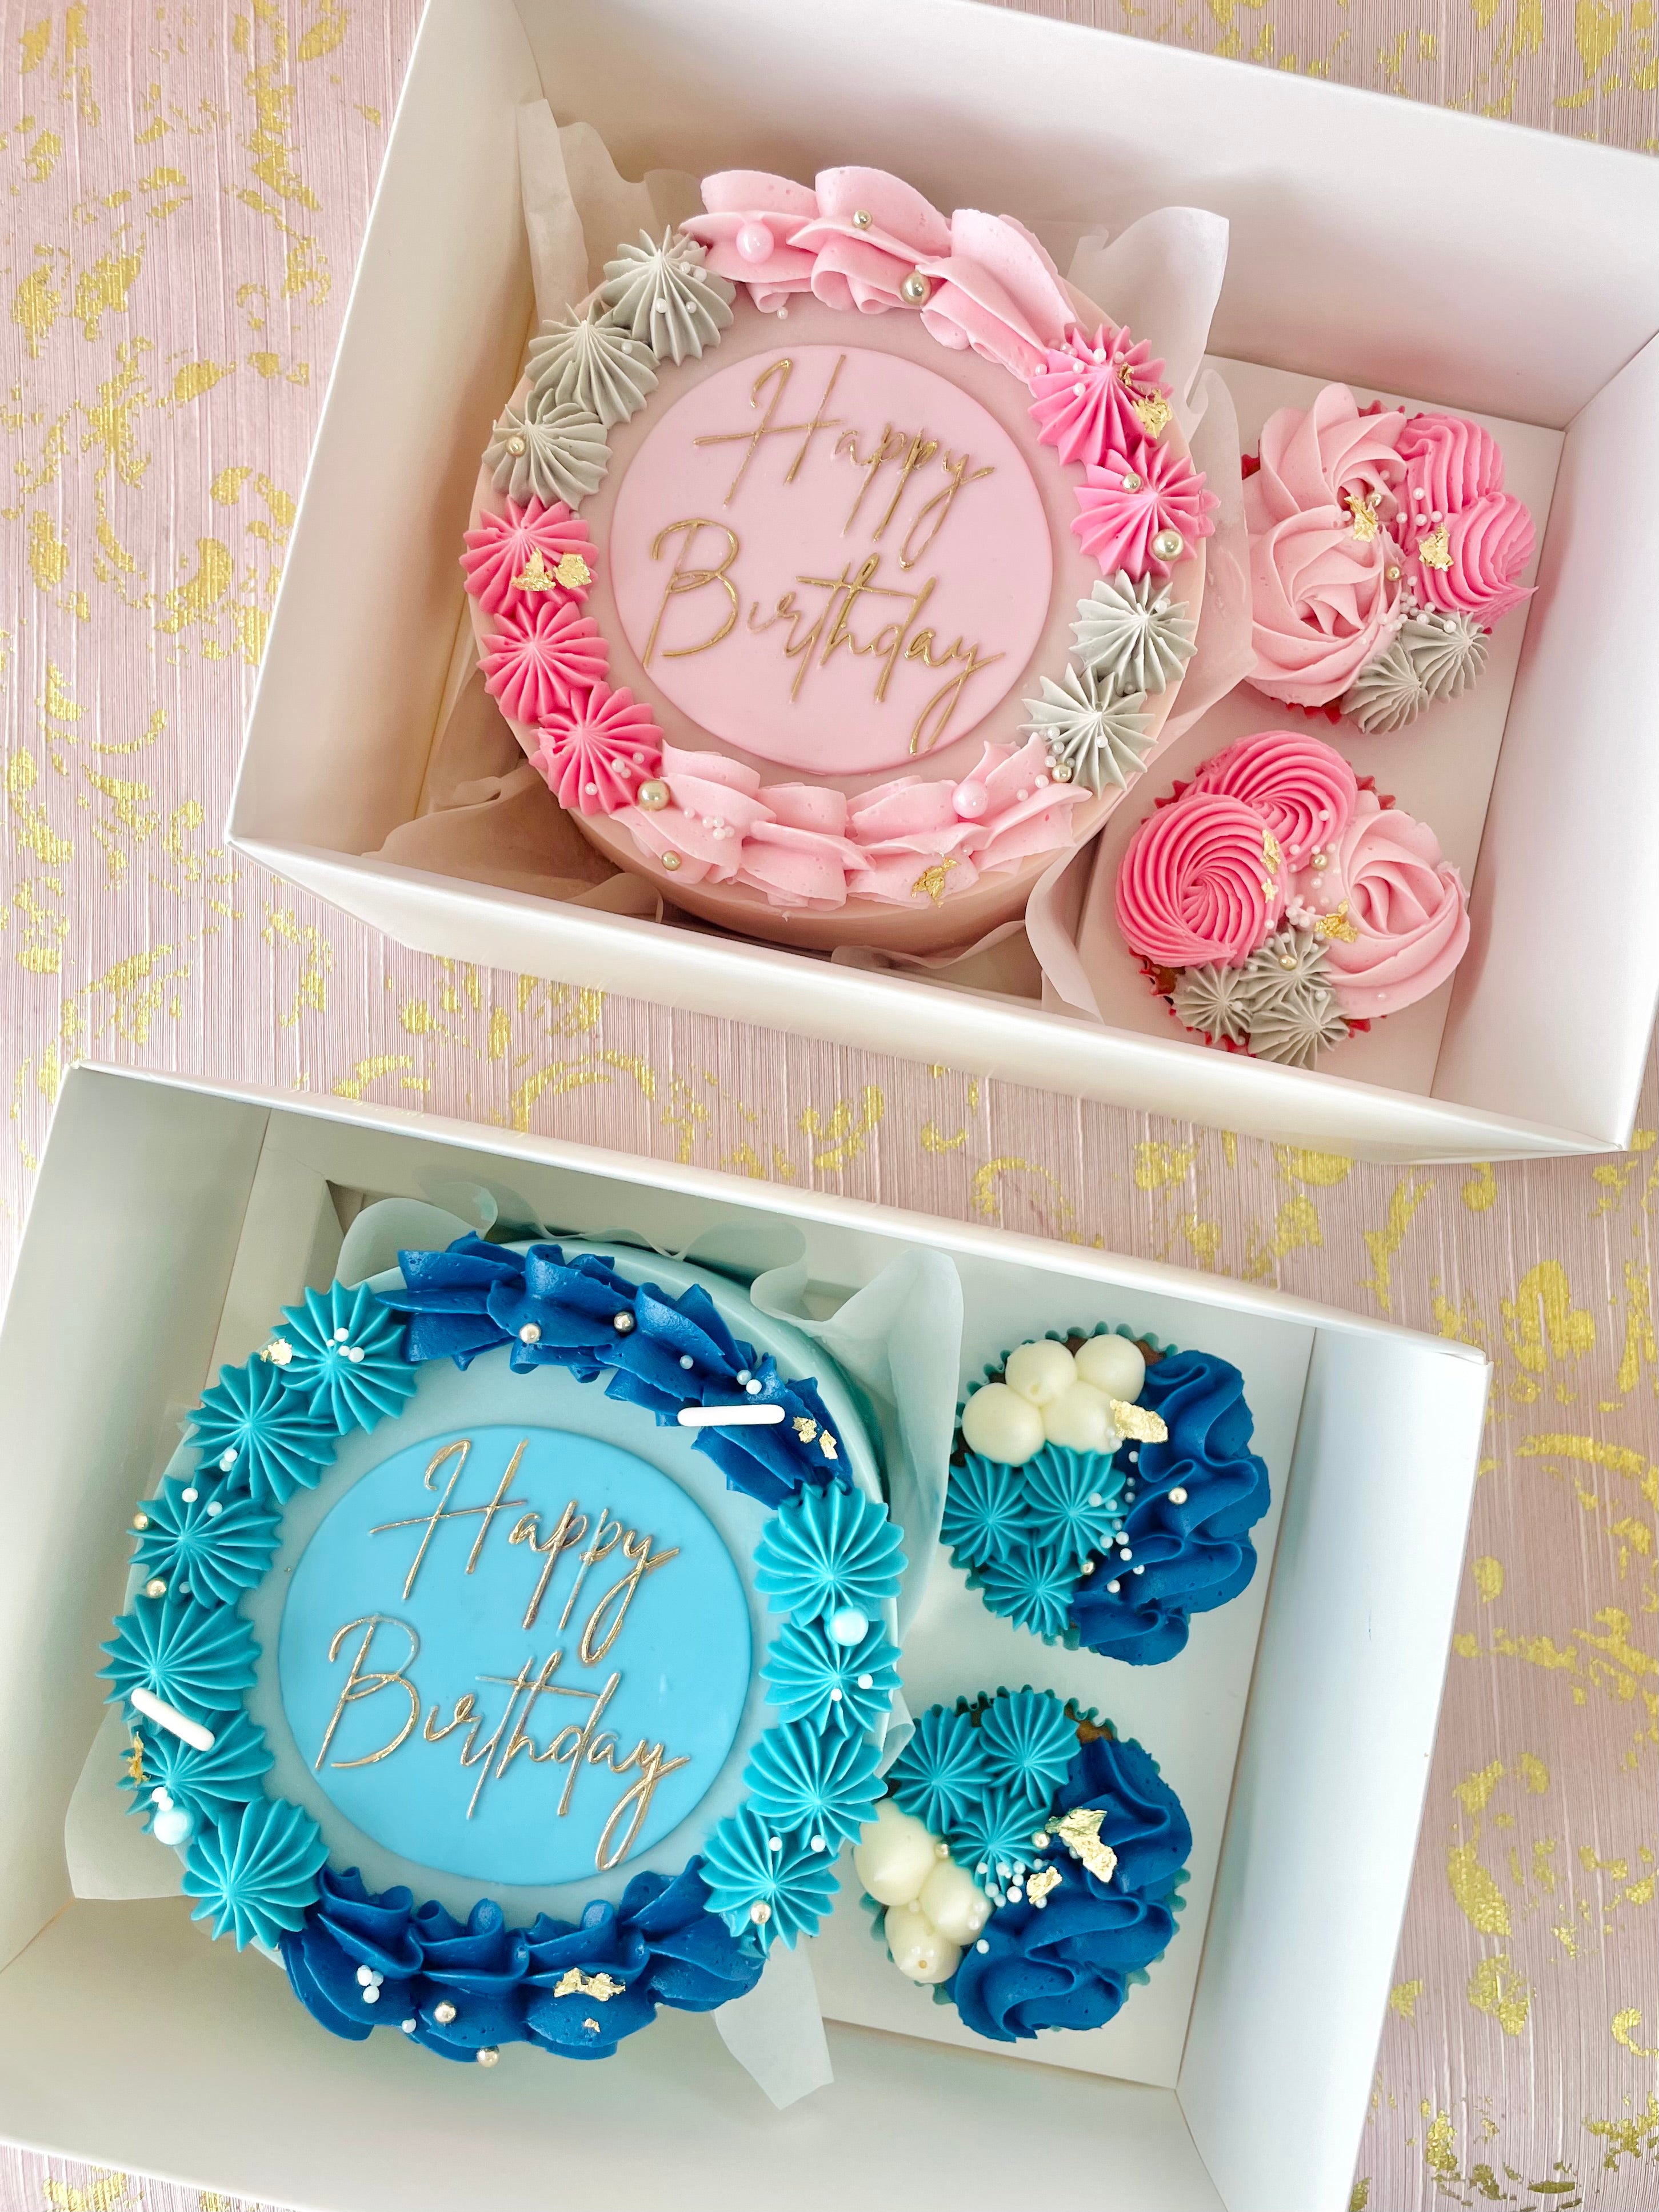 Bento cake & cupcakes